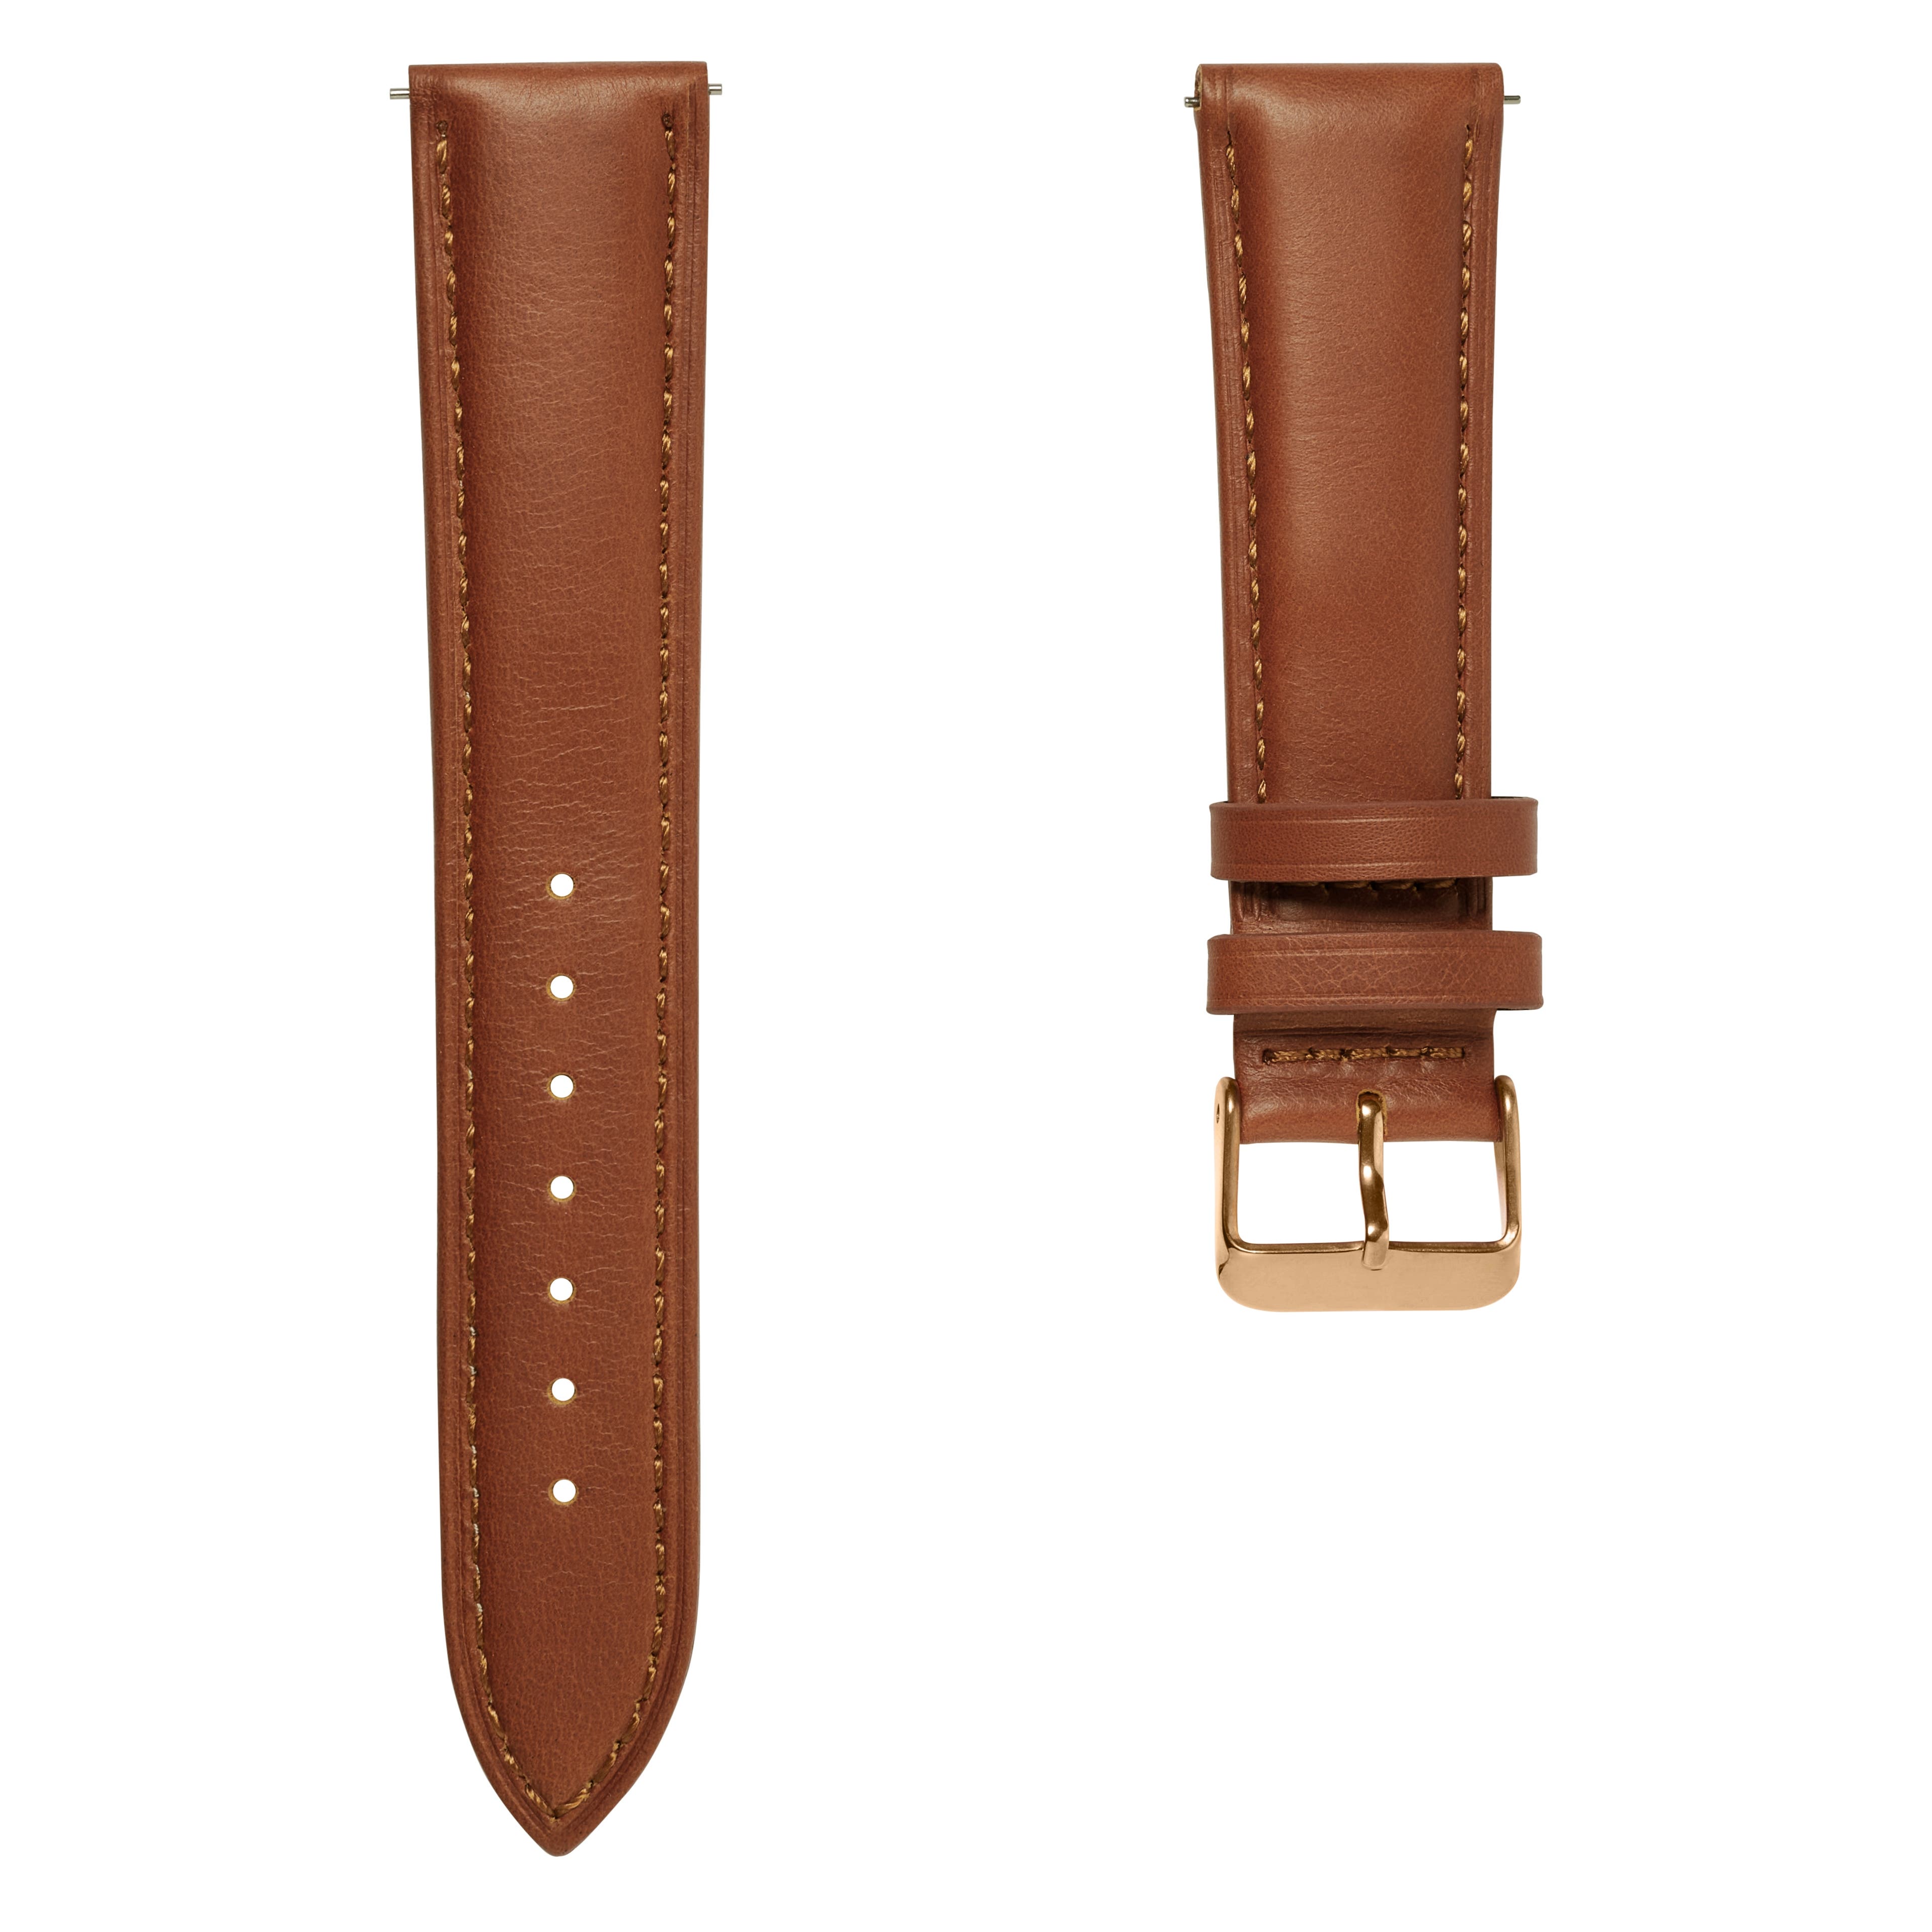 Bracelet de montre en cuir brun havane 18 mm avec boucle rose gold - Fixation rapide